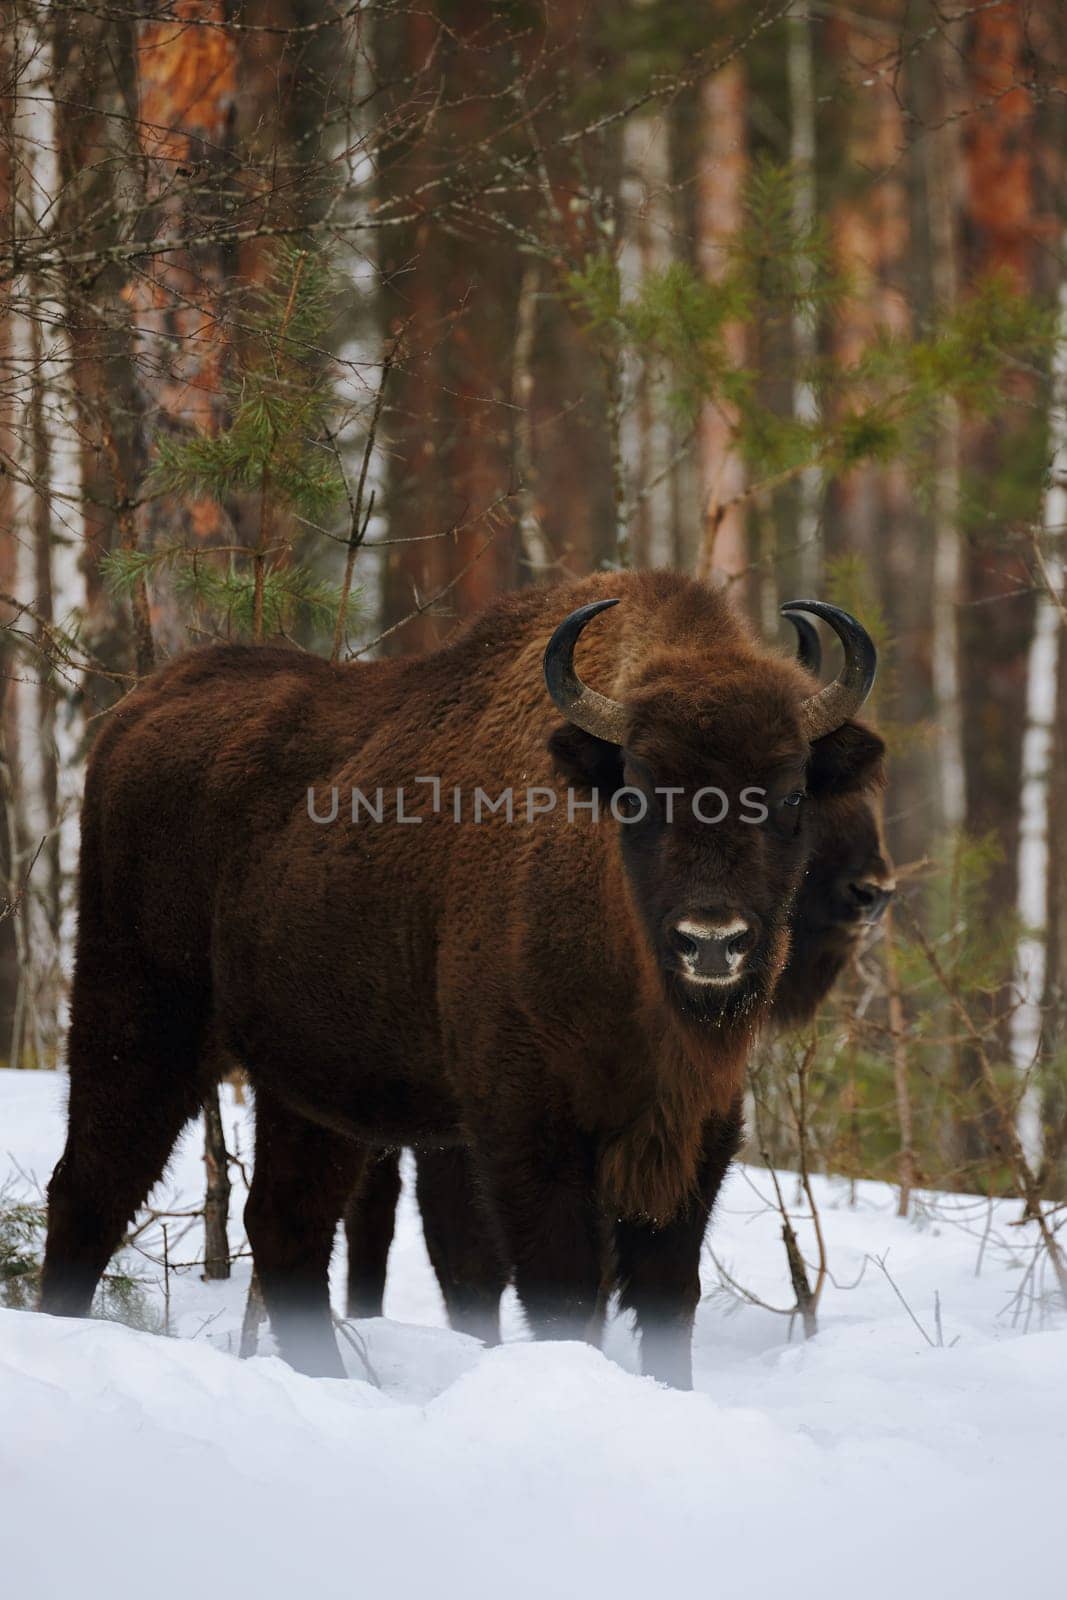 Wild European Bison in Winter Forest. European bison - Bison bonasus, artiodactyl mammals of the genus bison.